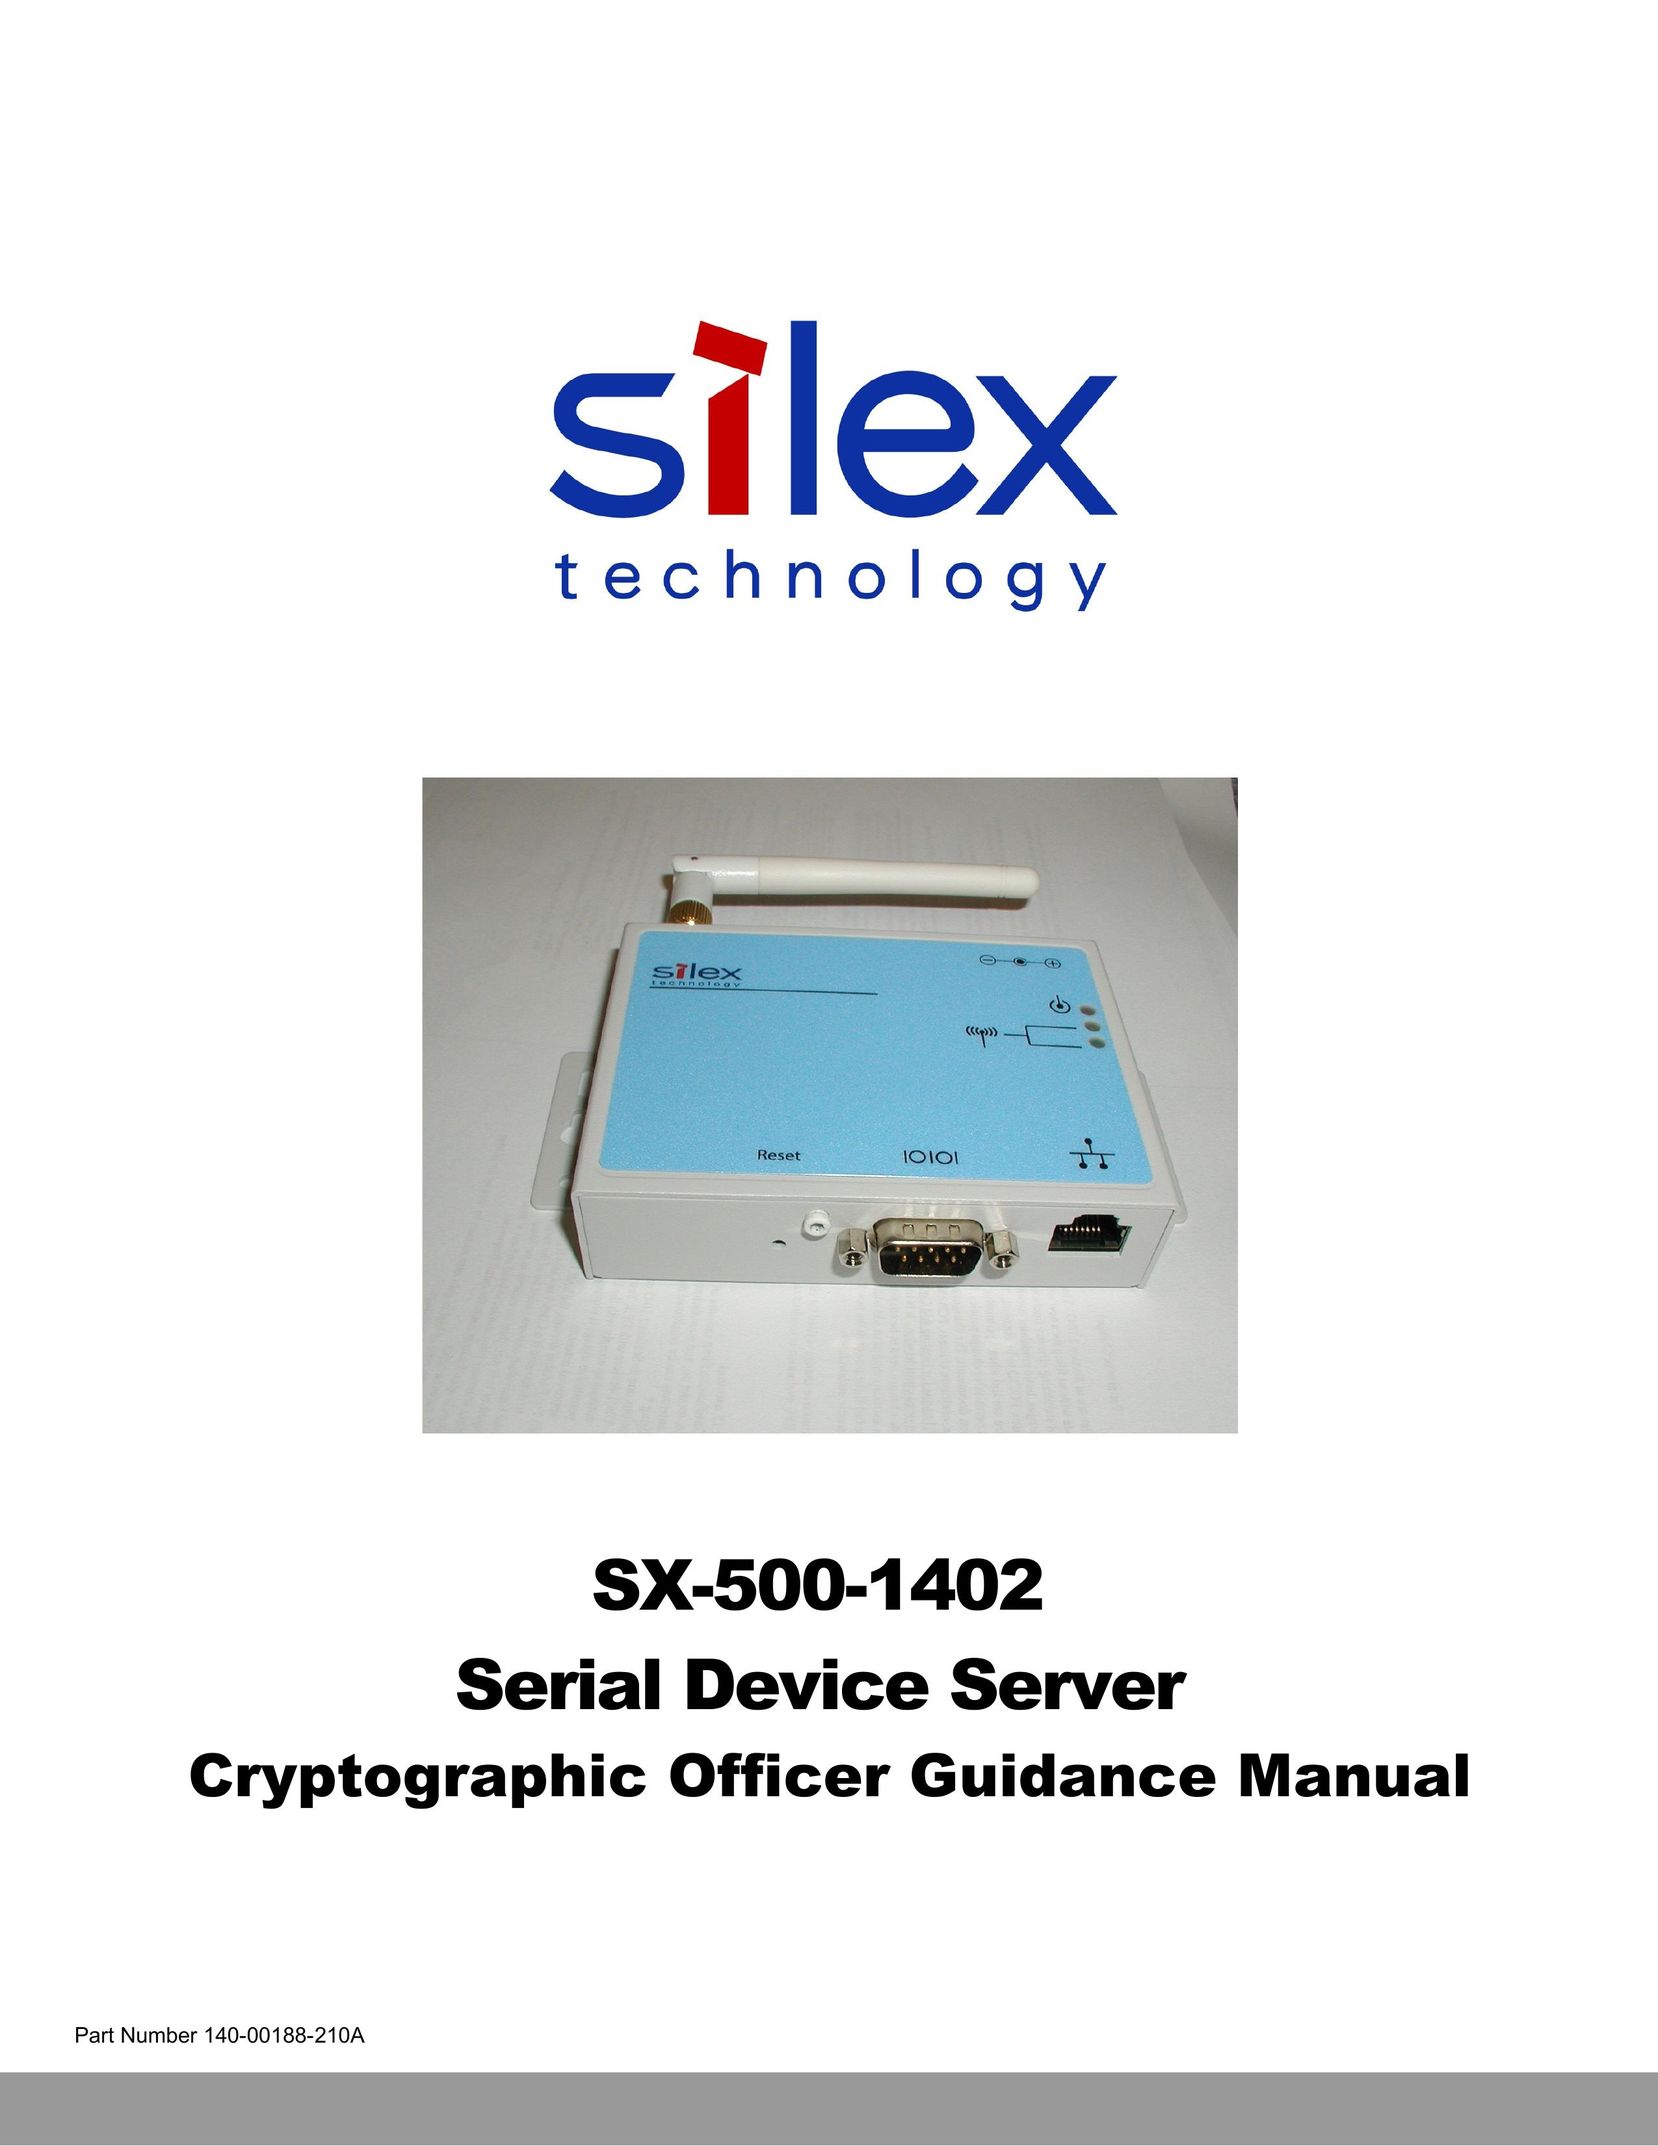 Silex technology SX-500-1402 Server User Manual